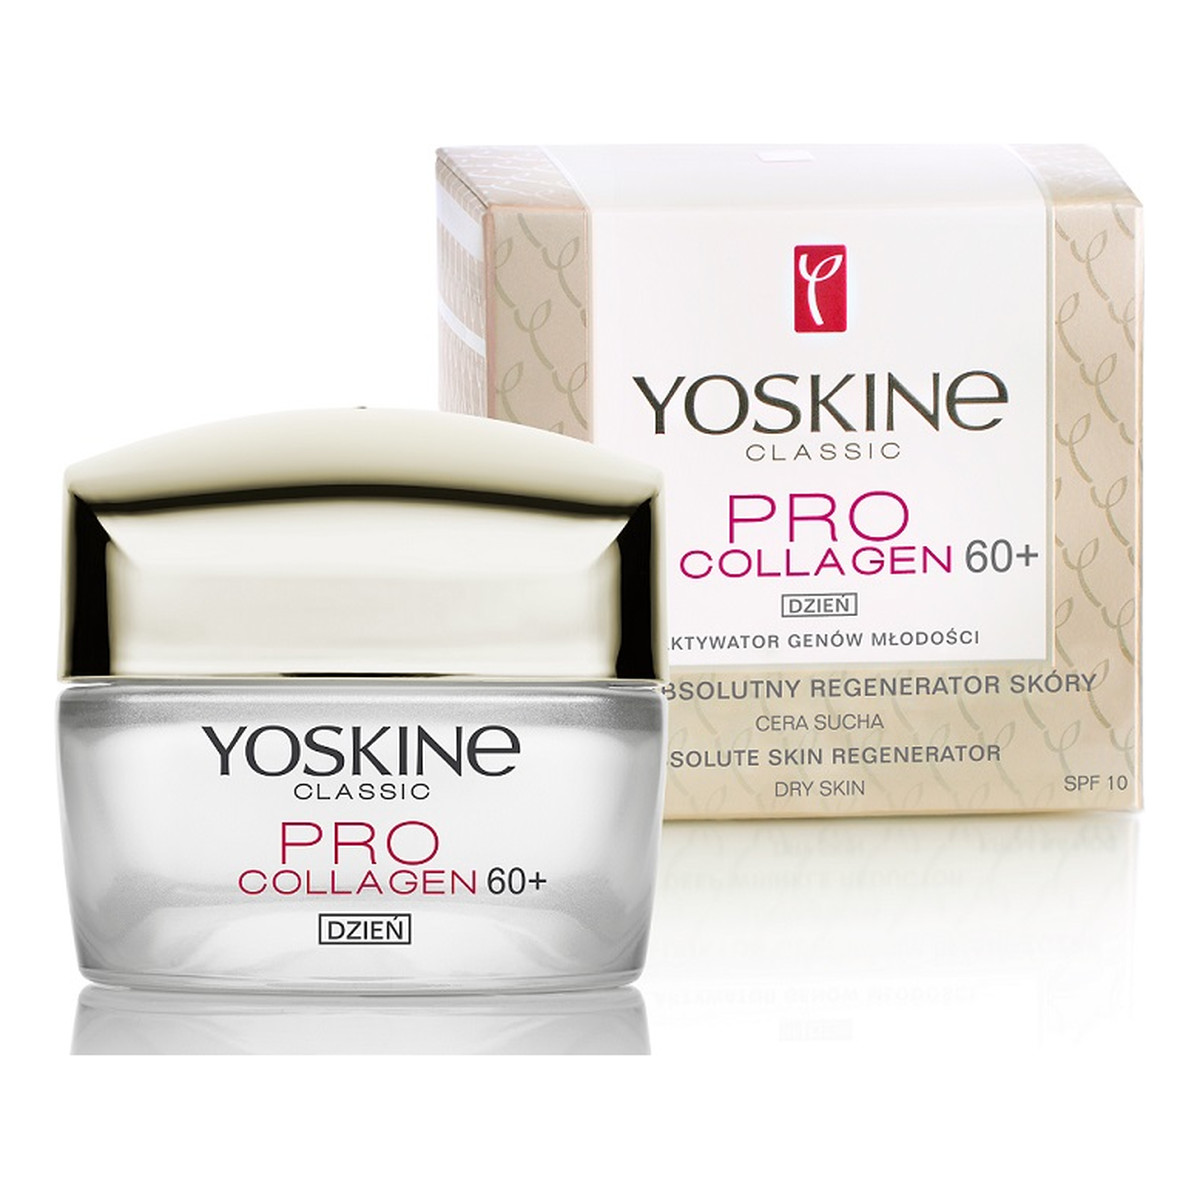 Yoskine Classic Pro Collagen 60+ Krem Absolutny Regenerator Skóry Na Dzień 50ml